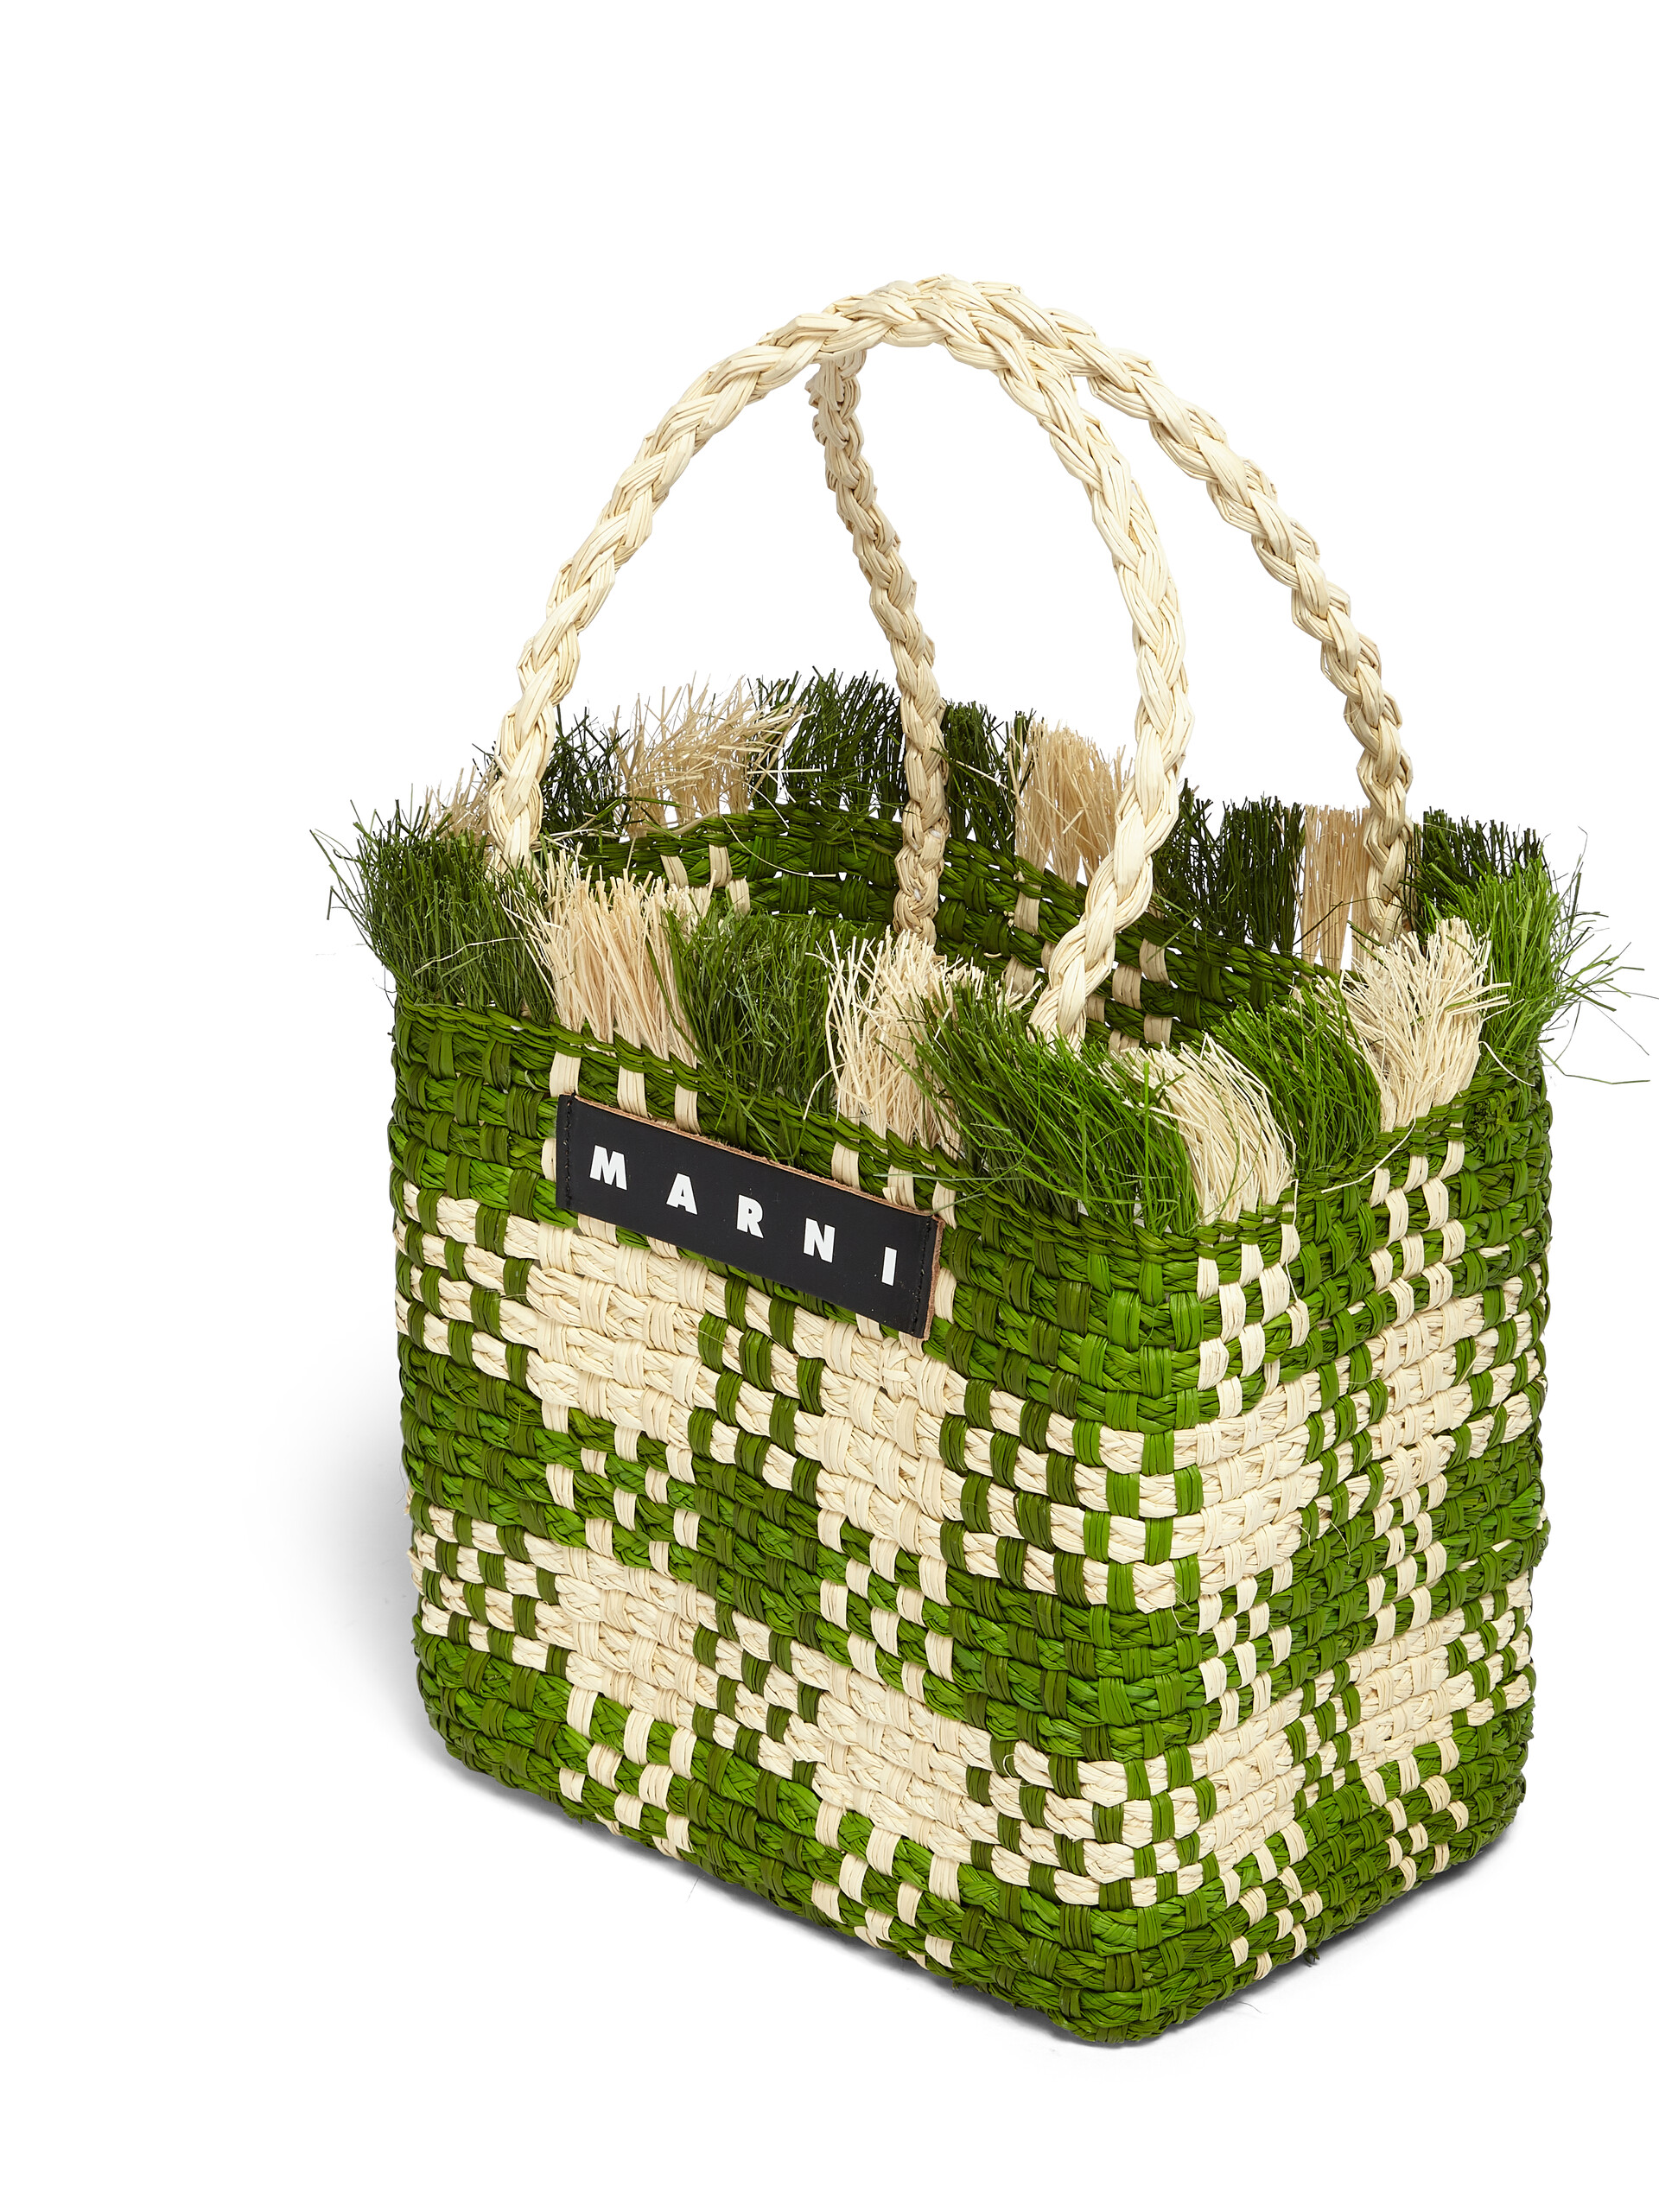 MARNI MARKET small bag in green natural fiber - Shopping Bags - Image 4